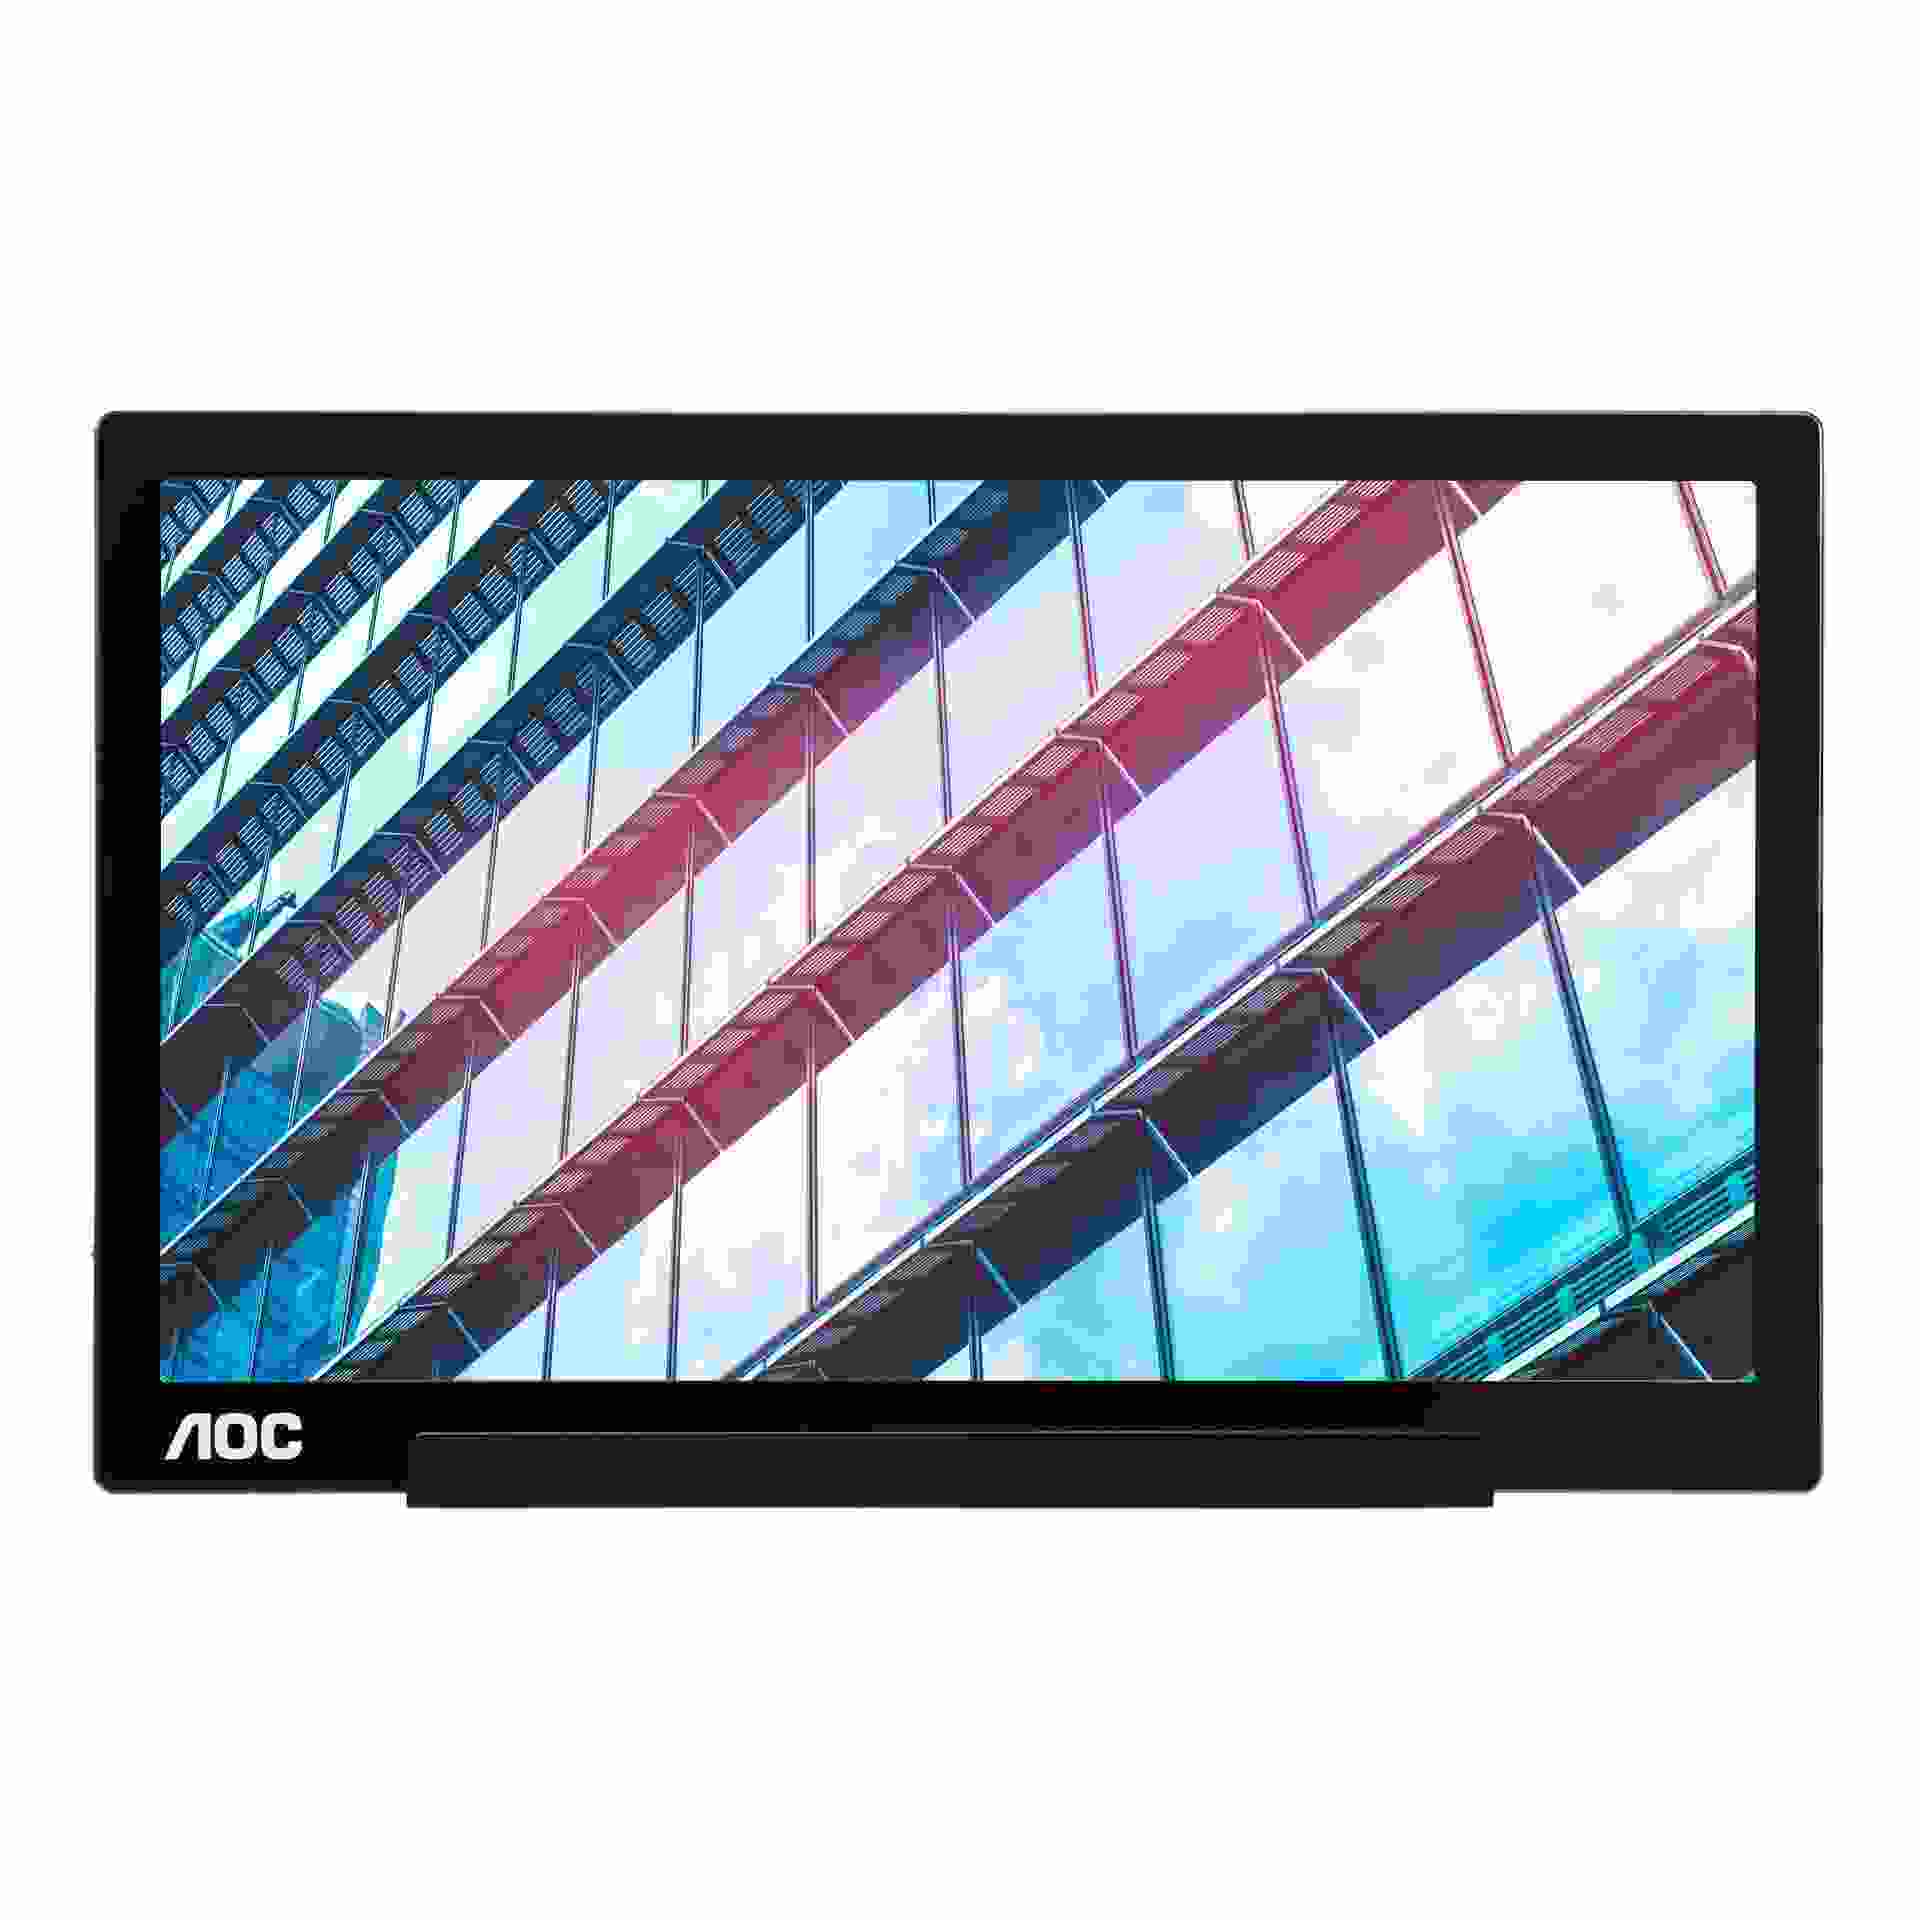 AOC MT IPS LCD WLED 15,6